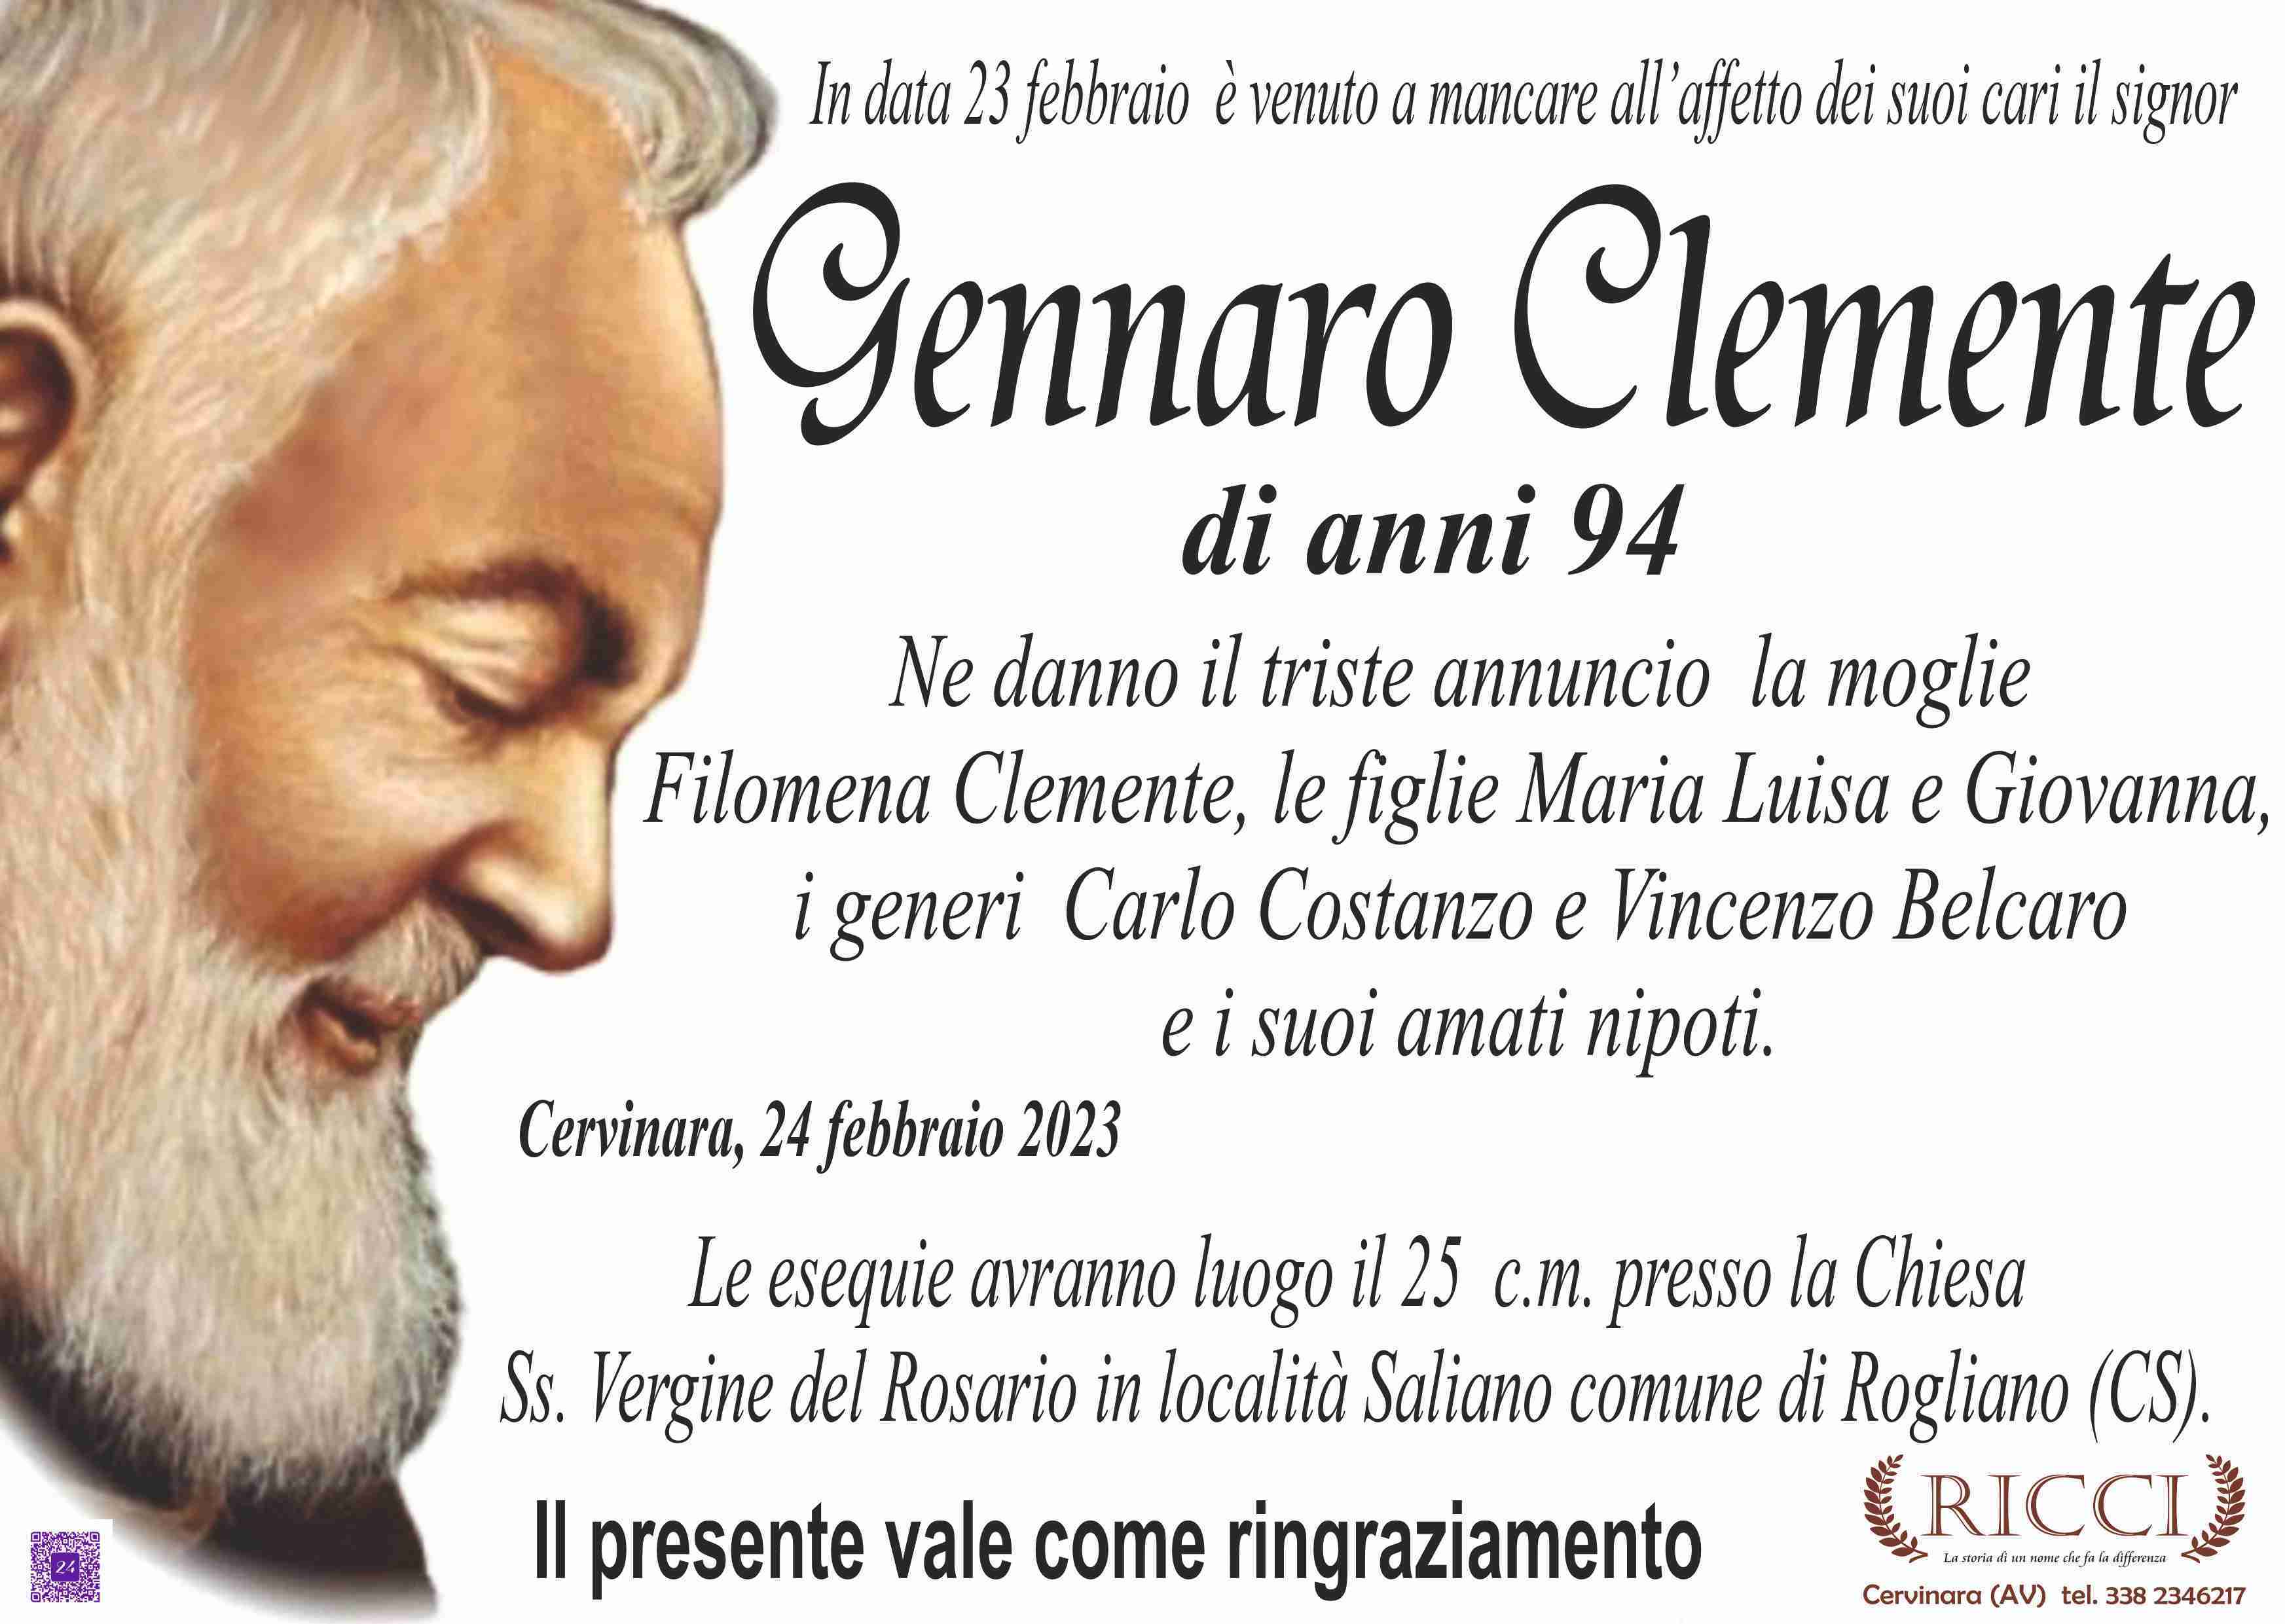 Gennaro Clemente